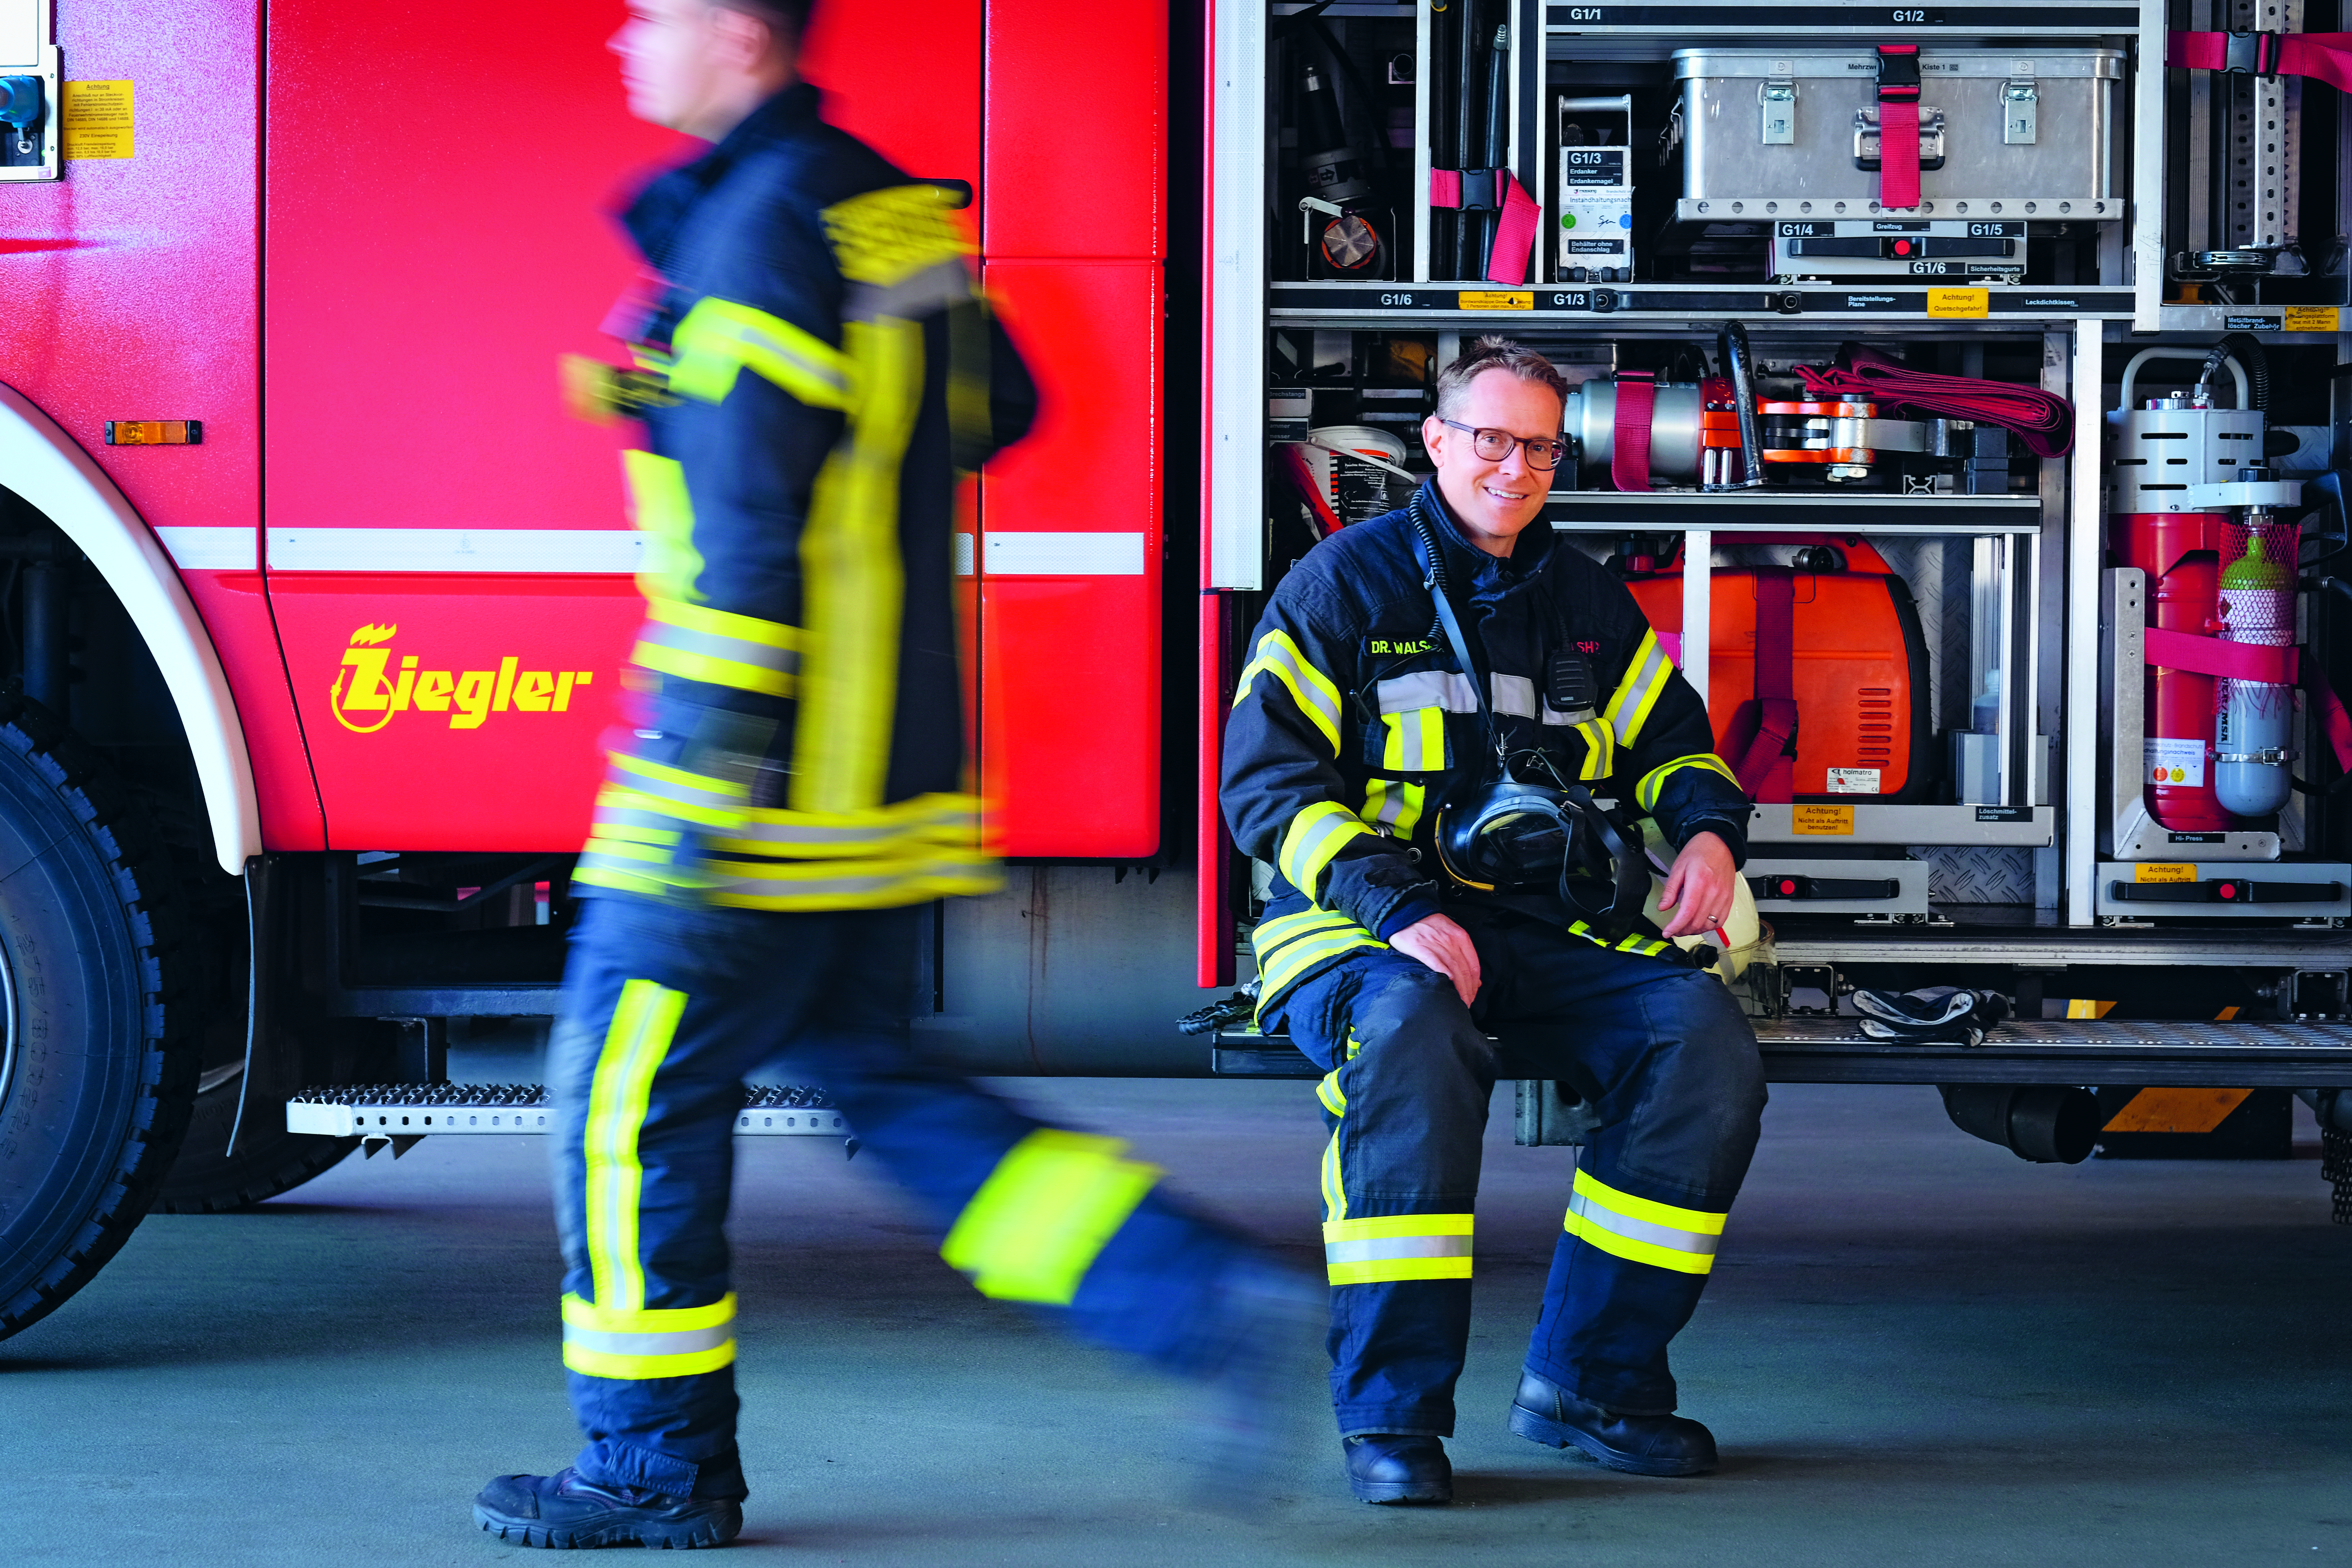 Eine gute Ausbildung in den Bereichen Brandbekämpfung, technische Hilfeleistung und Umweltschutz sowie eine moderne technische Ausrüstung – Peter Walsh fühlt sich bei seinen Einsätzen sicher. Angst hat er beim Ausrücken keine, aber Respekt.